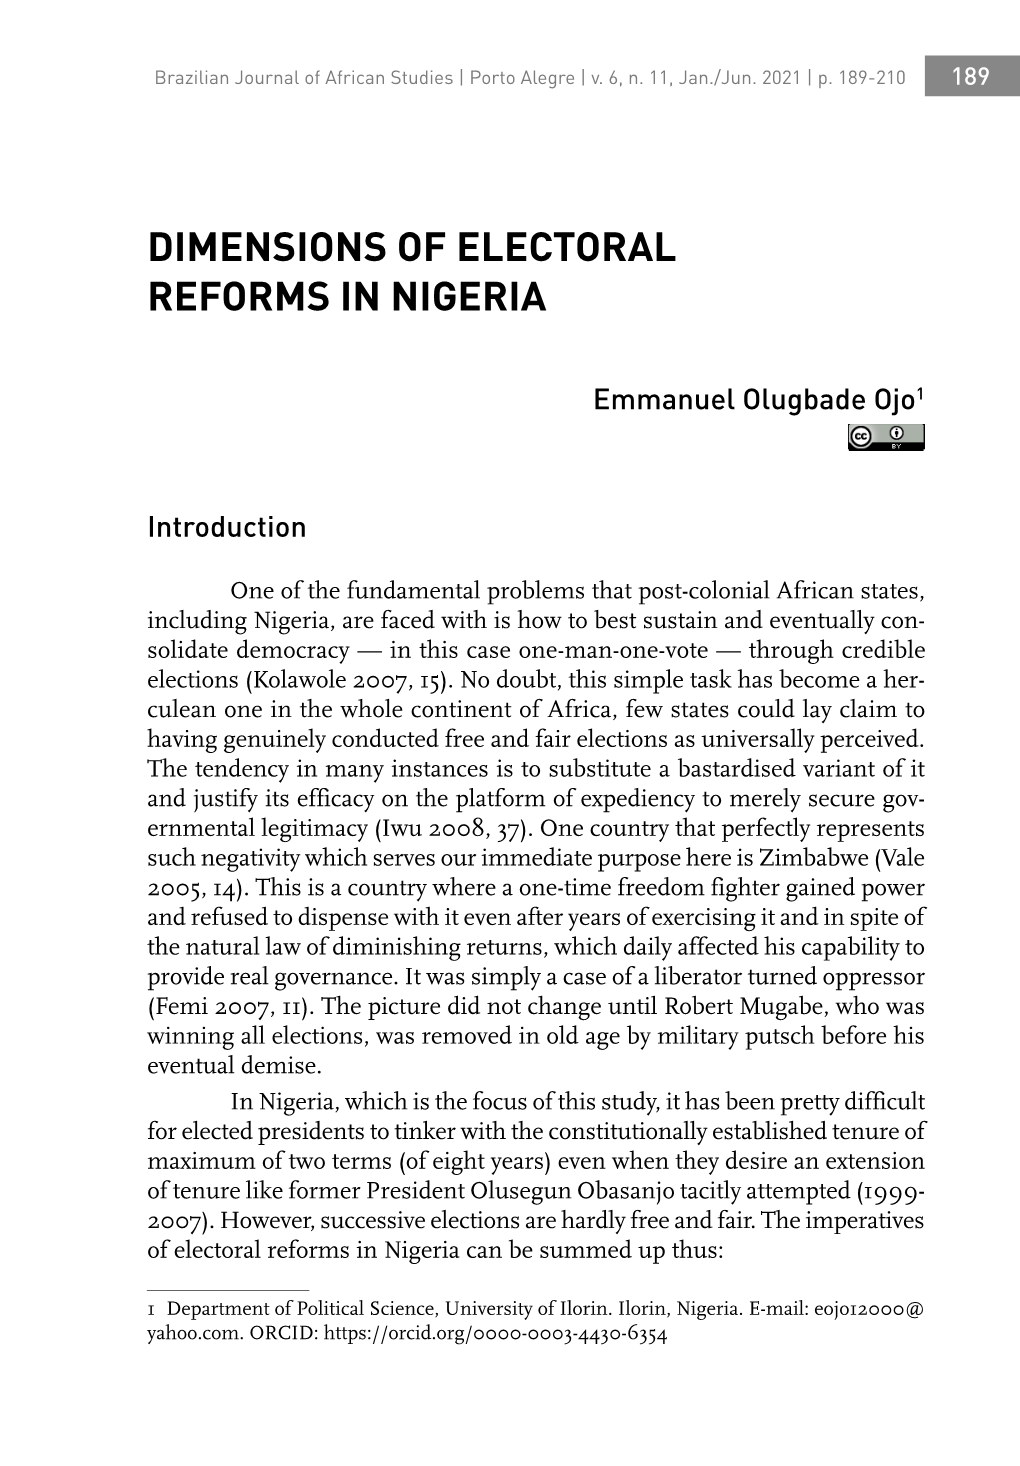 Dimensions of Electoral Reforms in Nigeria